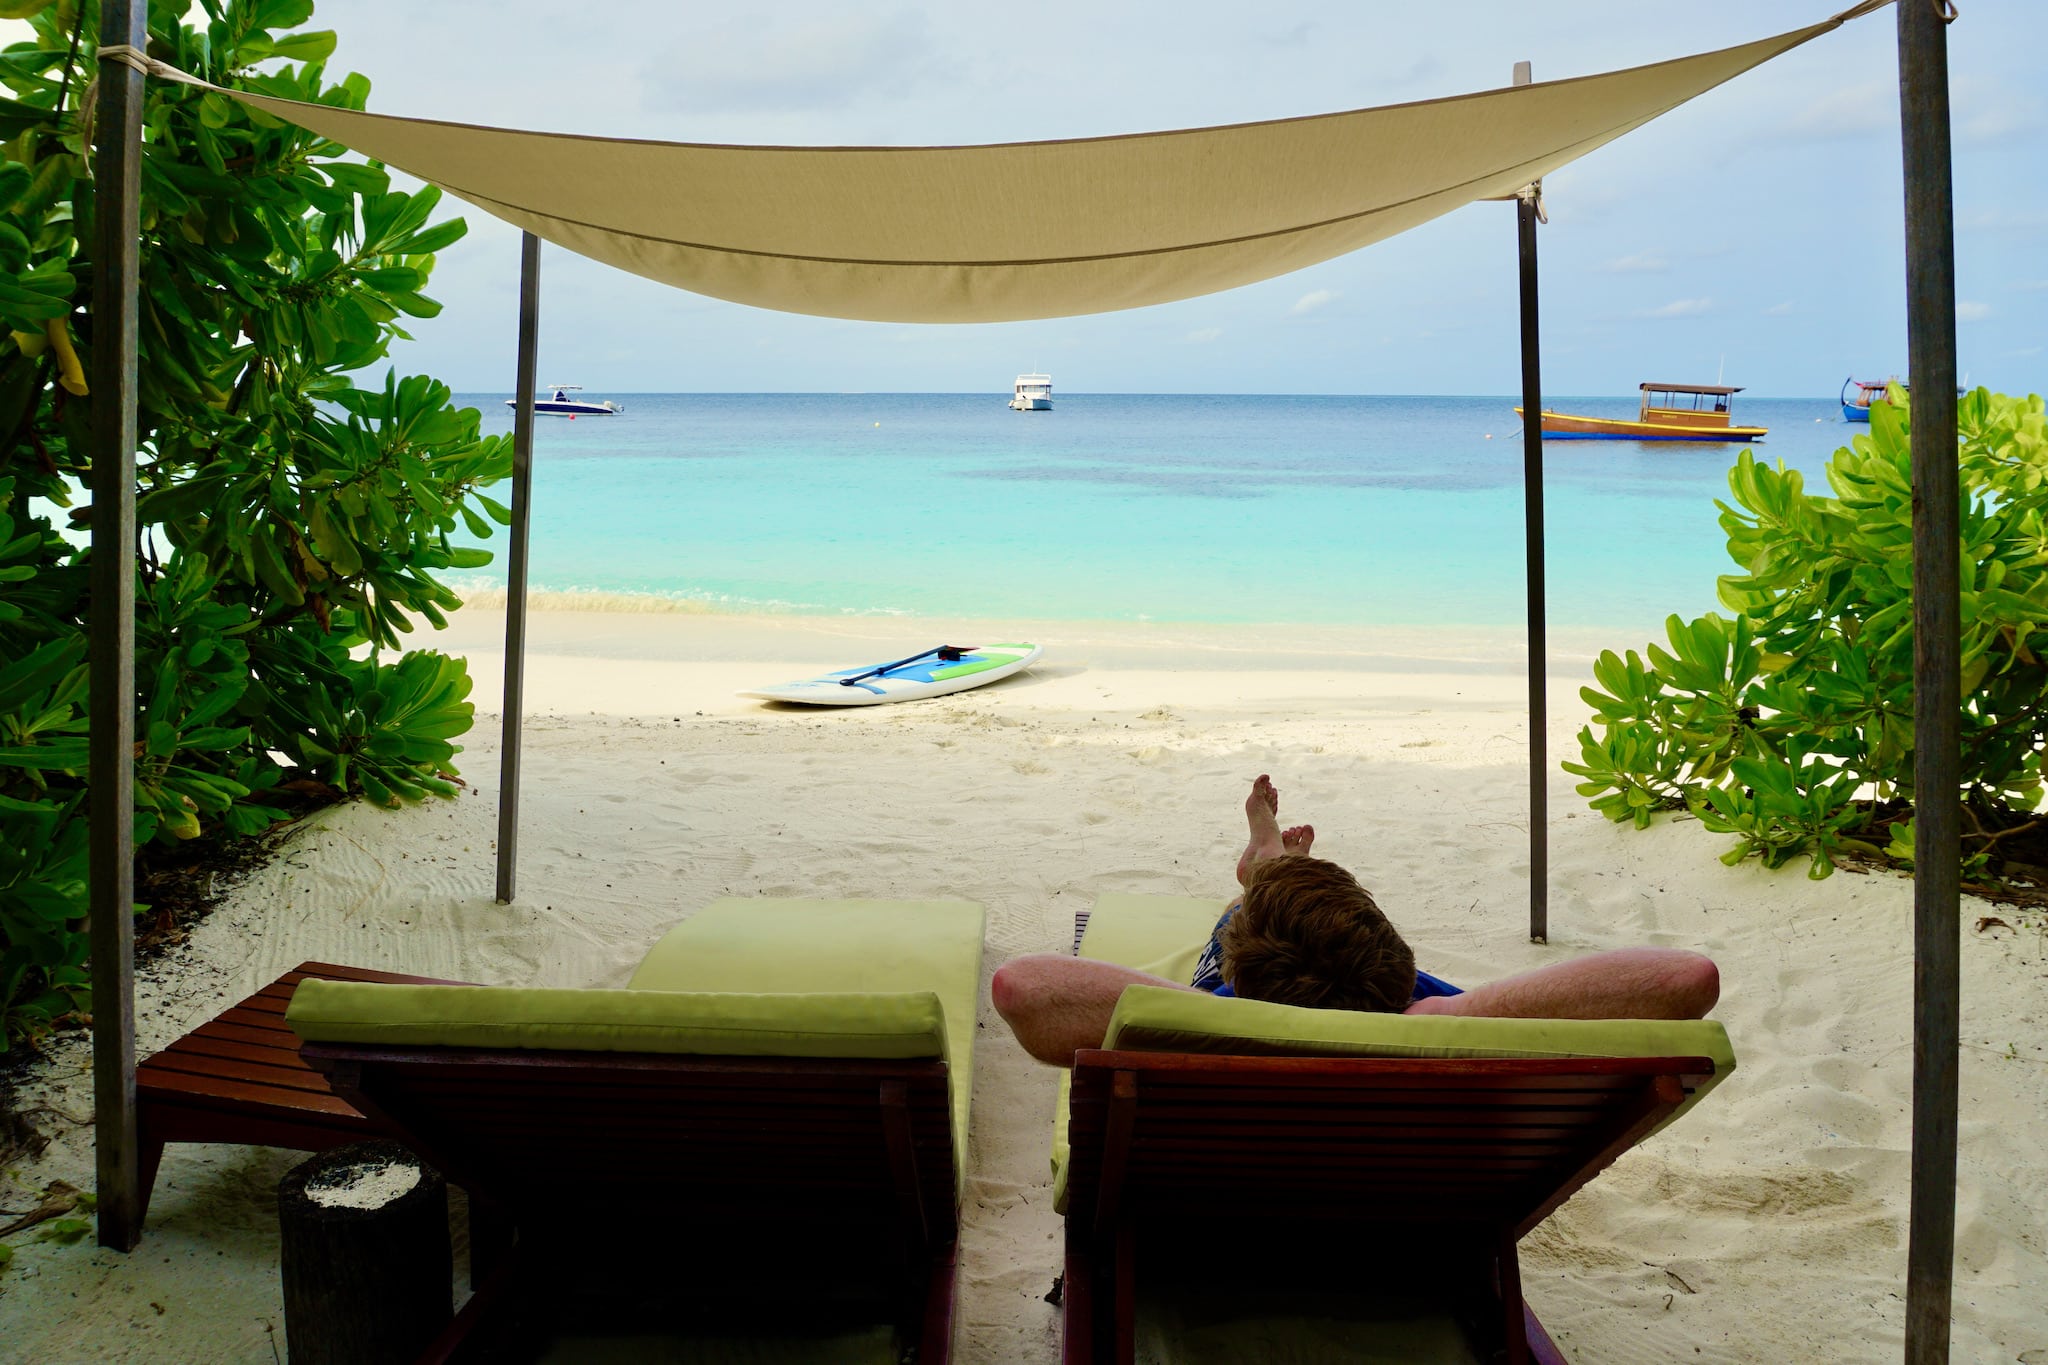 Einfach mal die Seele baumeln lassen und die tolle Unterkunft genießen – man muss auf den Malediven nicht unbedingt etwas unternehmen. Foto: Sascha Tegtmeyer Reisebericht Malediven Tipps